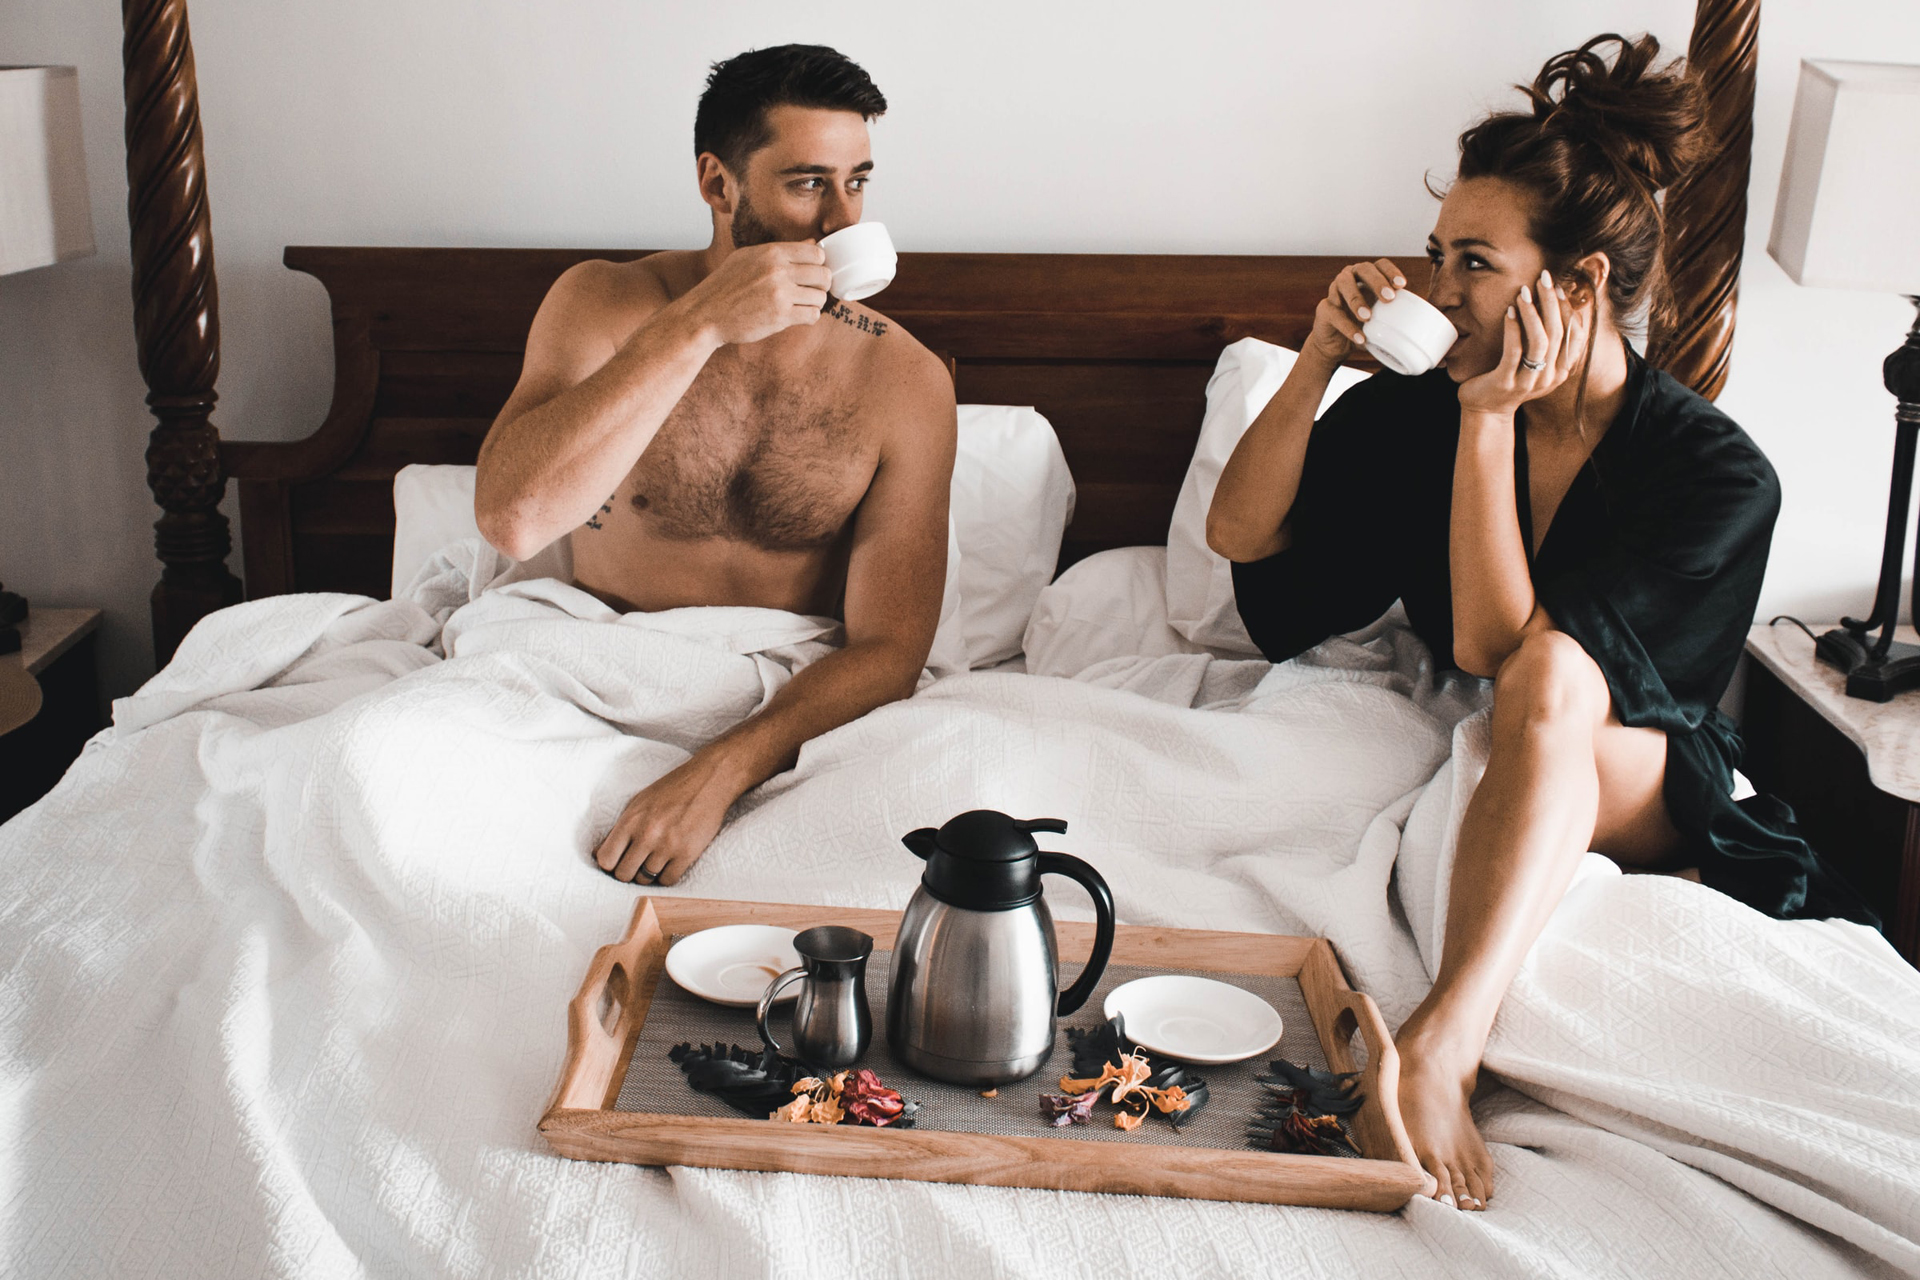 Mann und Frau sitzen auf einem Bett